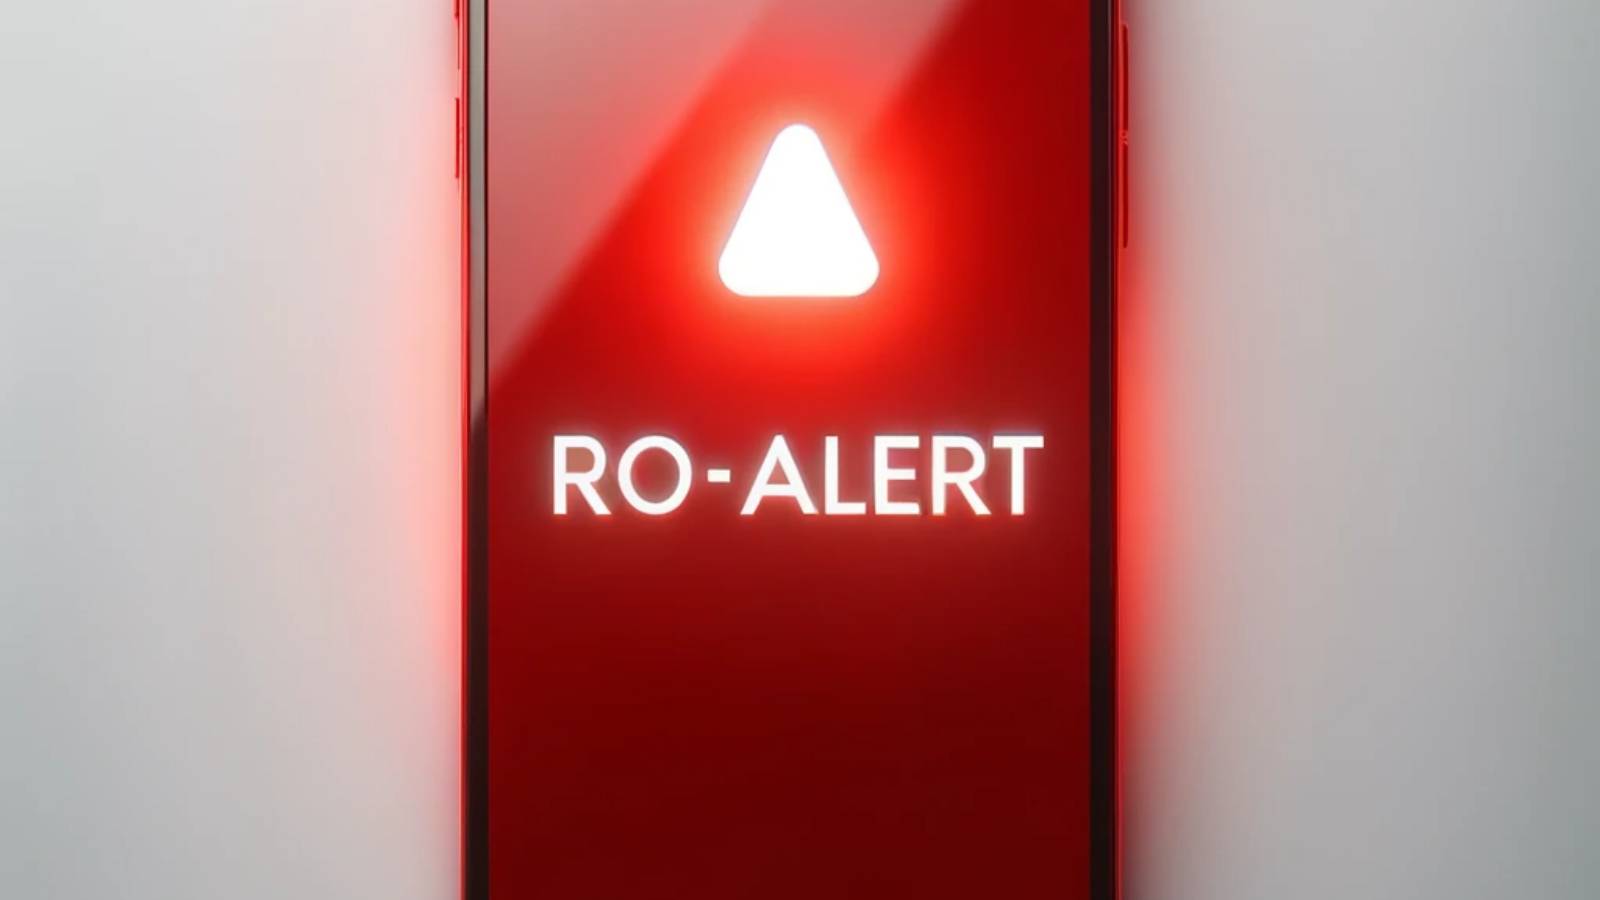 alarm ro-alert nødsituation tulcea drone rusland